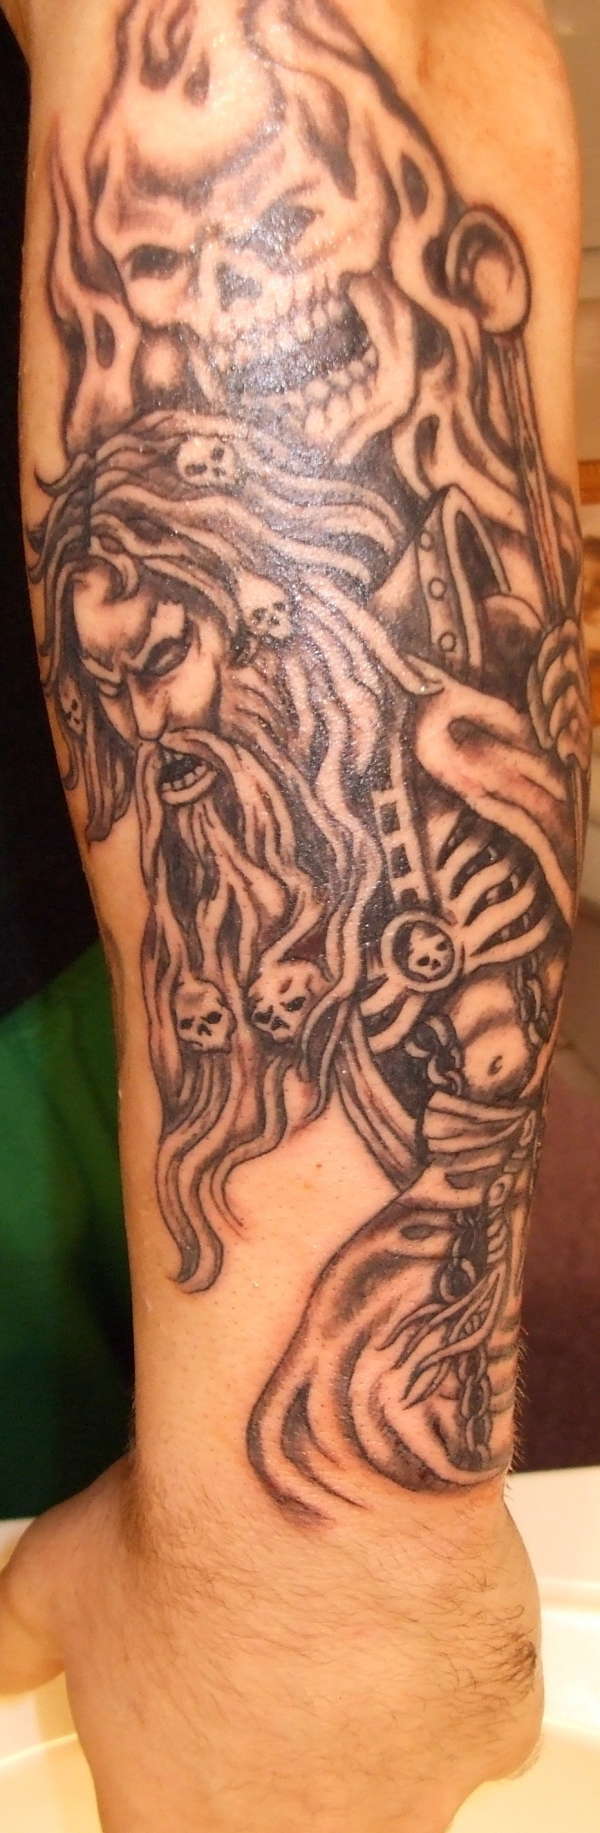 Wizard tattoo